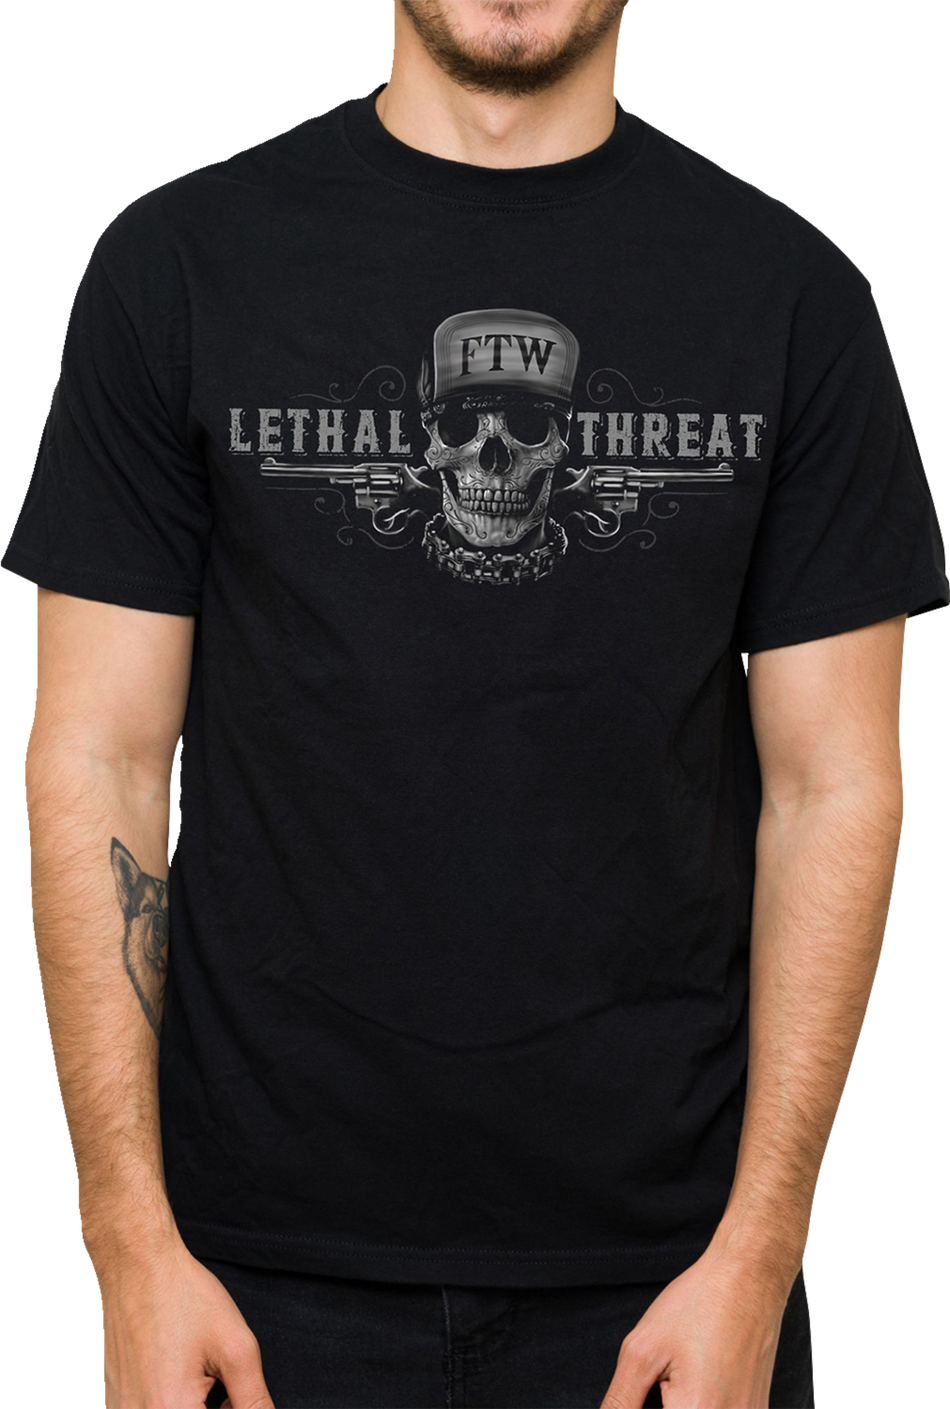 LETHAL THREAT Friend or Foe T-Shirt - Black - XL LT20904XL